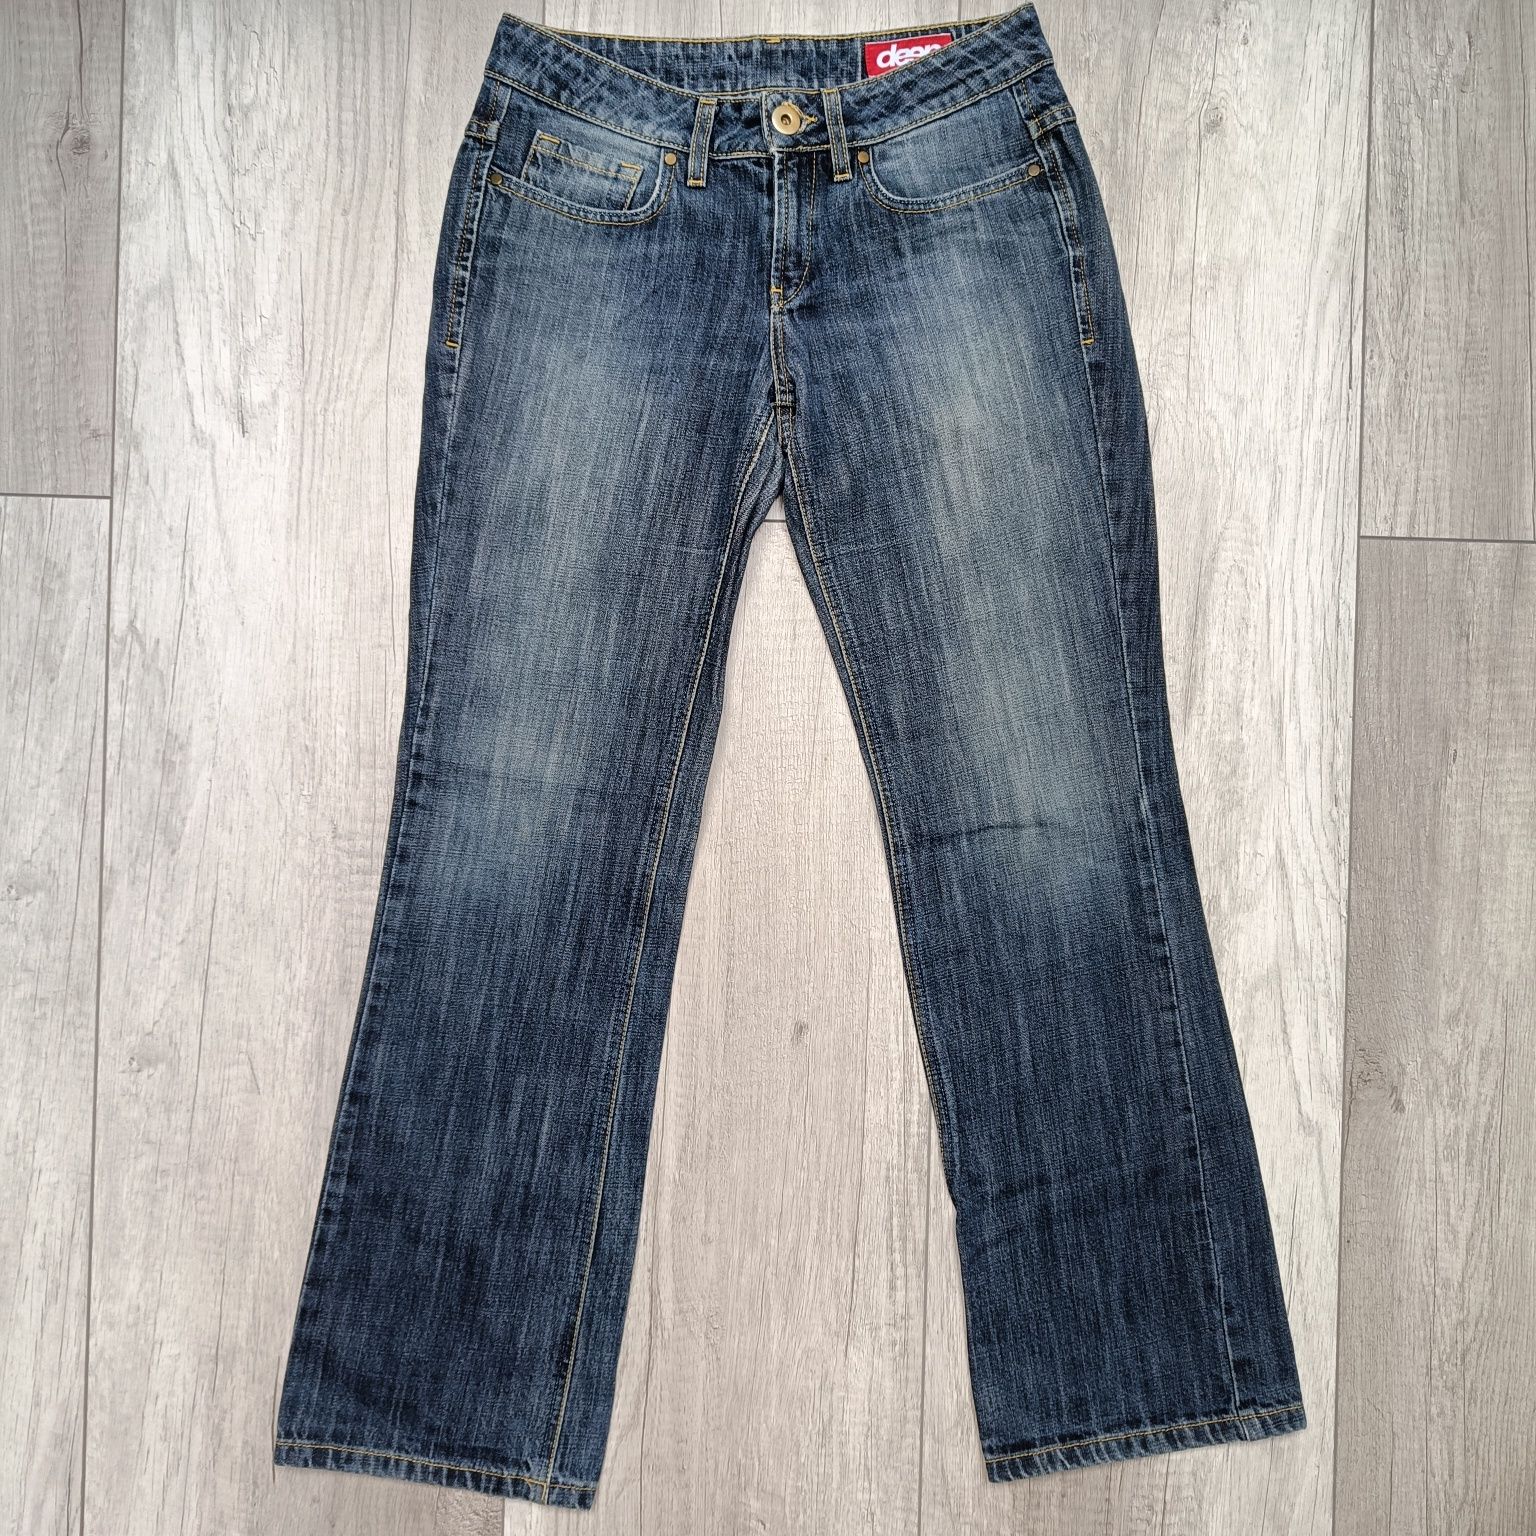 Niebieskie spodnie jeansowe damskie, dżinsy Deep, rozm. 38 / M [29/32]